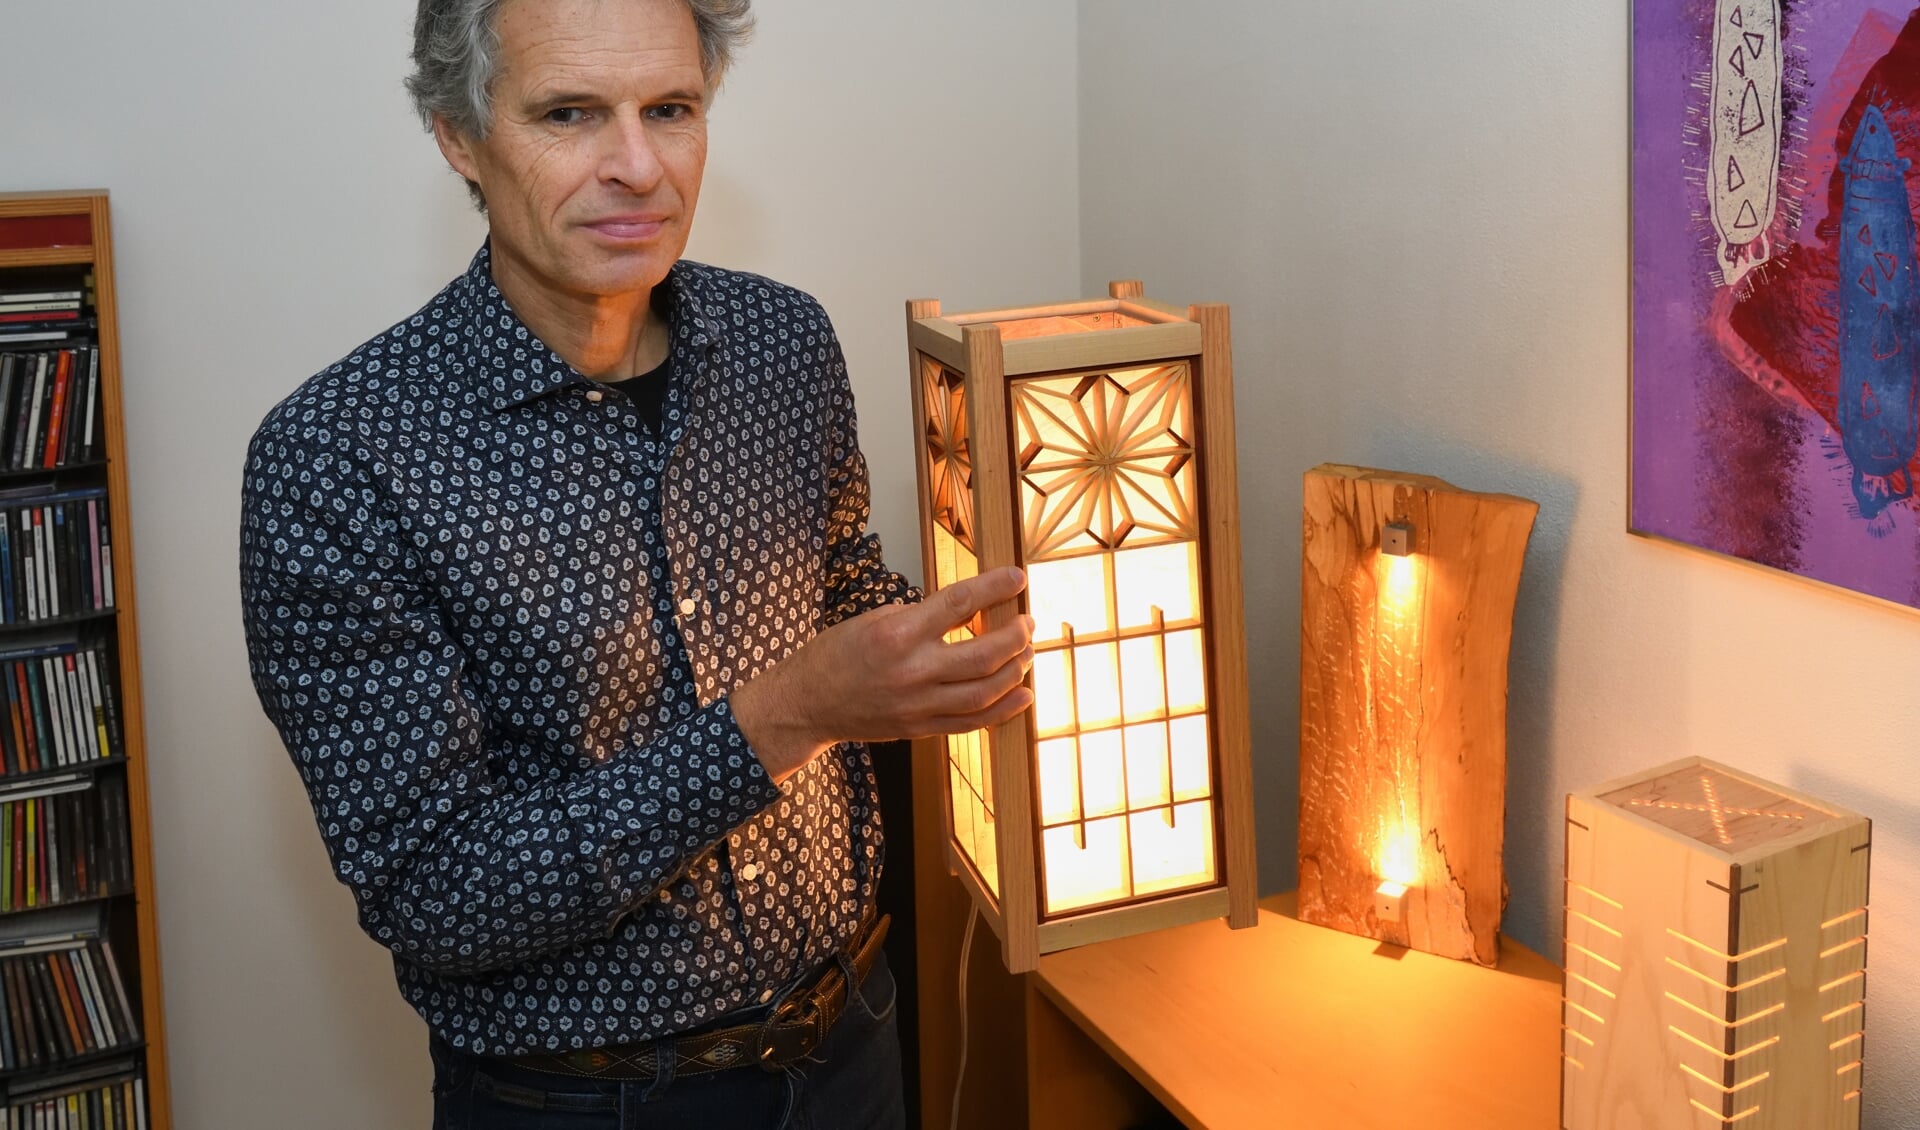 Rob houdt een zelfgemaakte lamp vast (archieffoto)